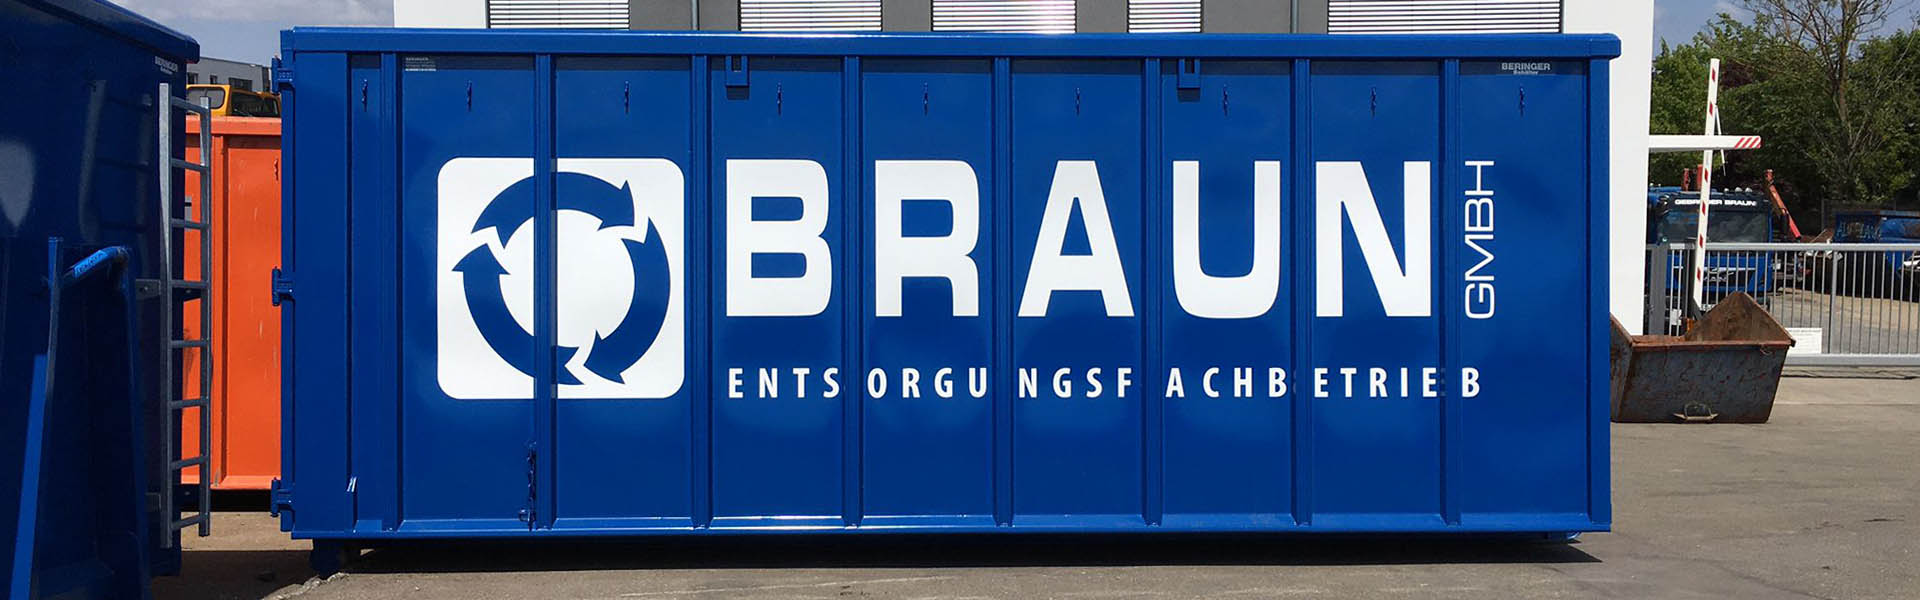 Produktion des Folienschnitt und Beschriftung der Container der Braun GmbH, Entsorgungsbetrieb.